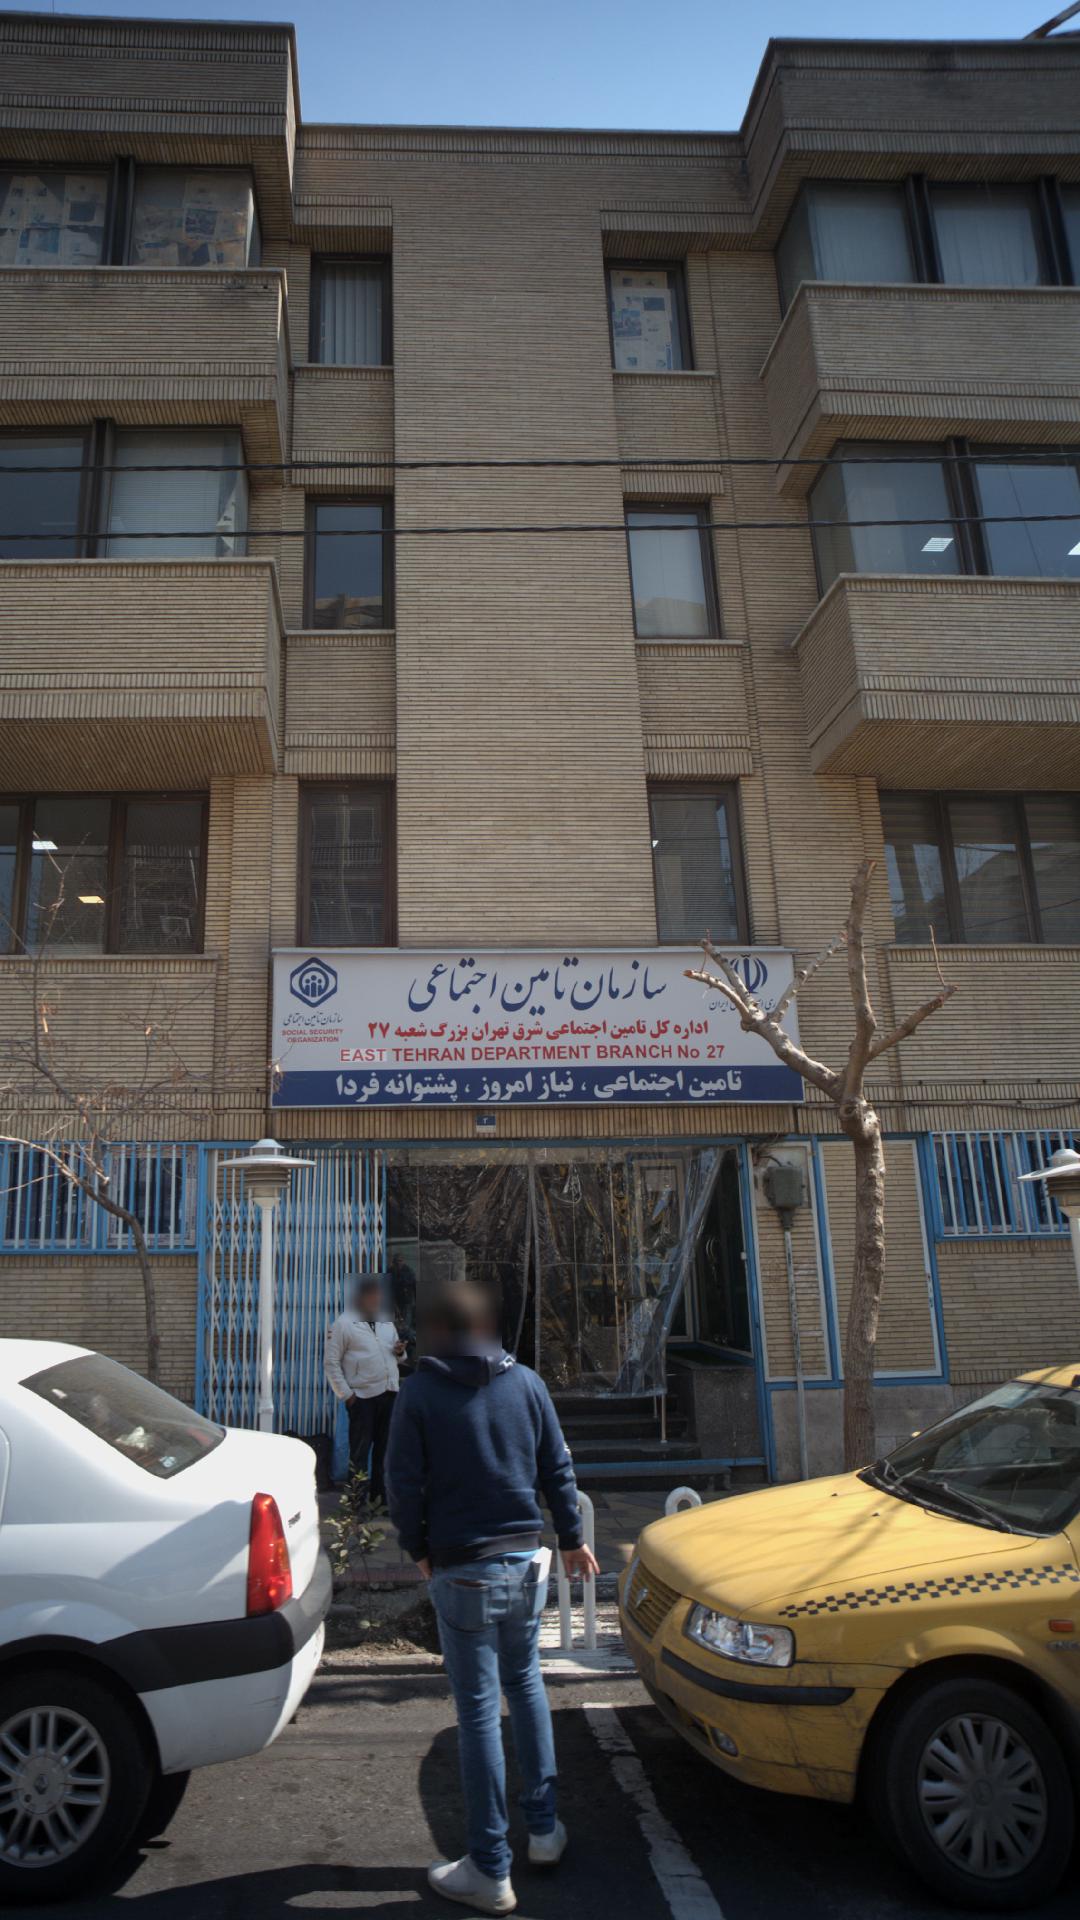 اداره کل تامین اجتماعی شرق تهران بزرگ شعبه ۲۷